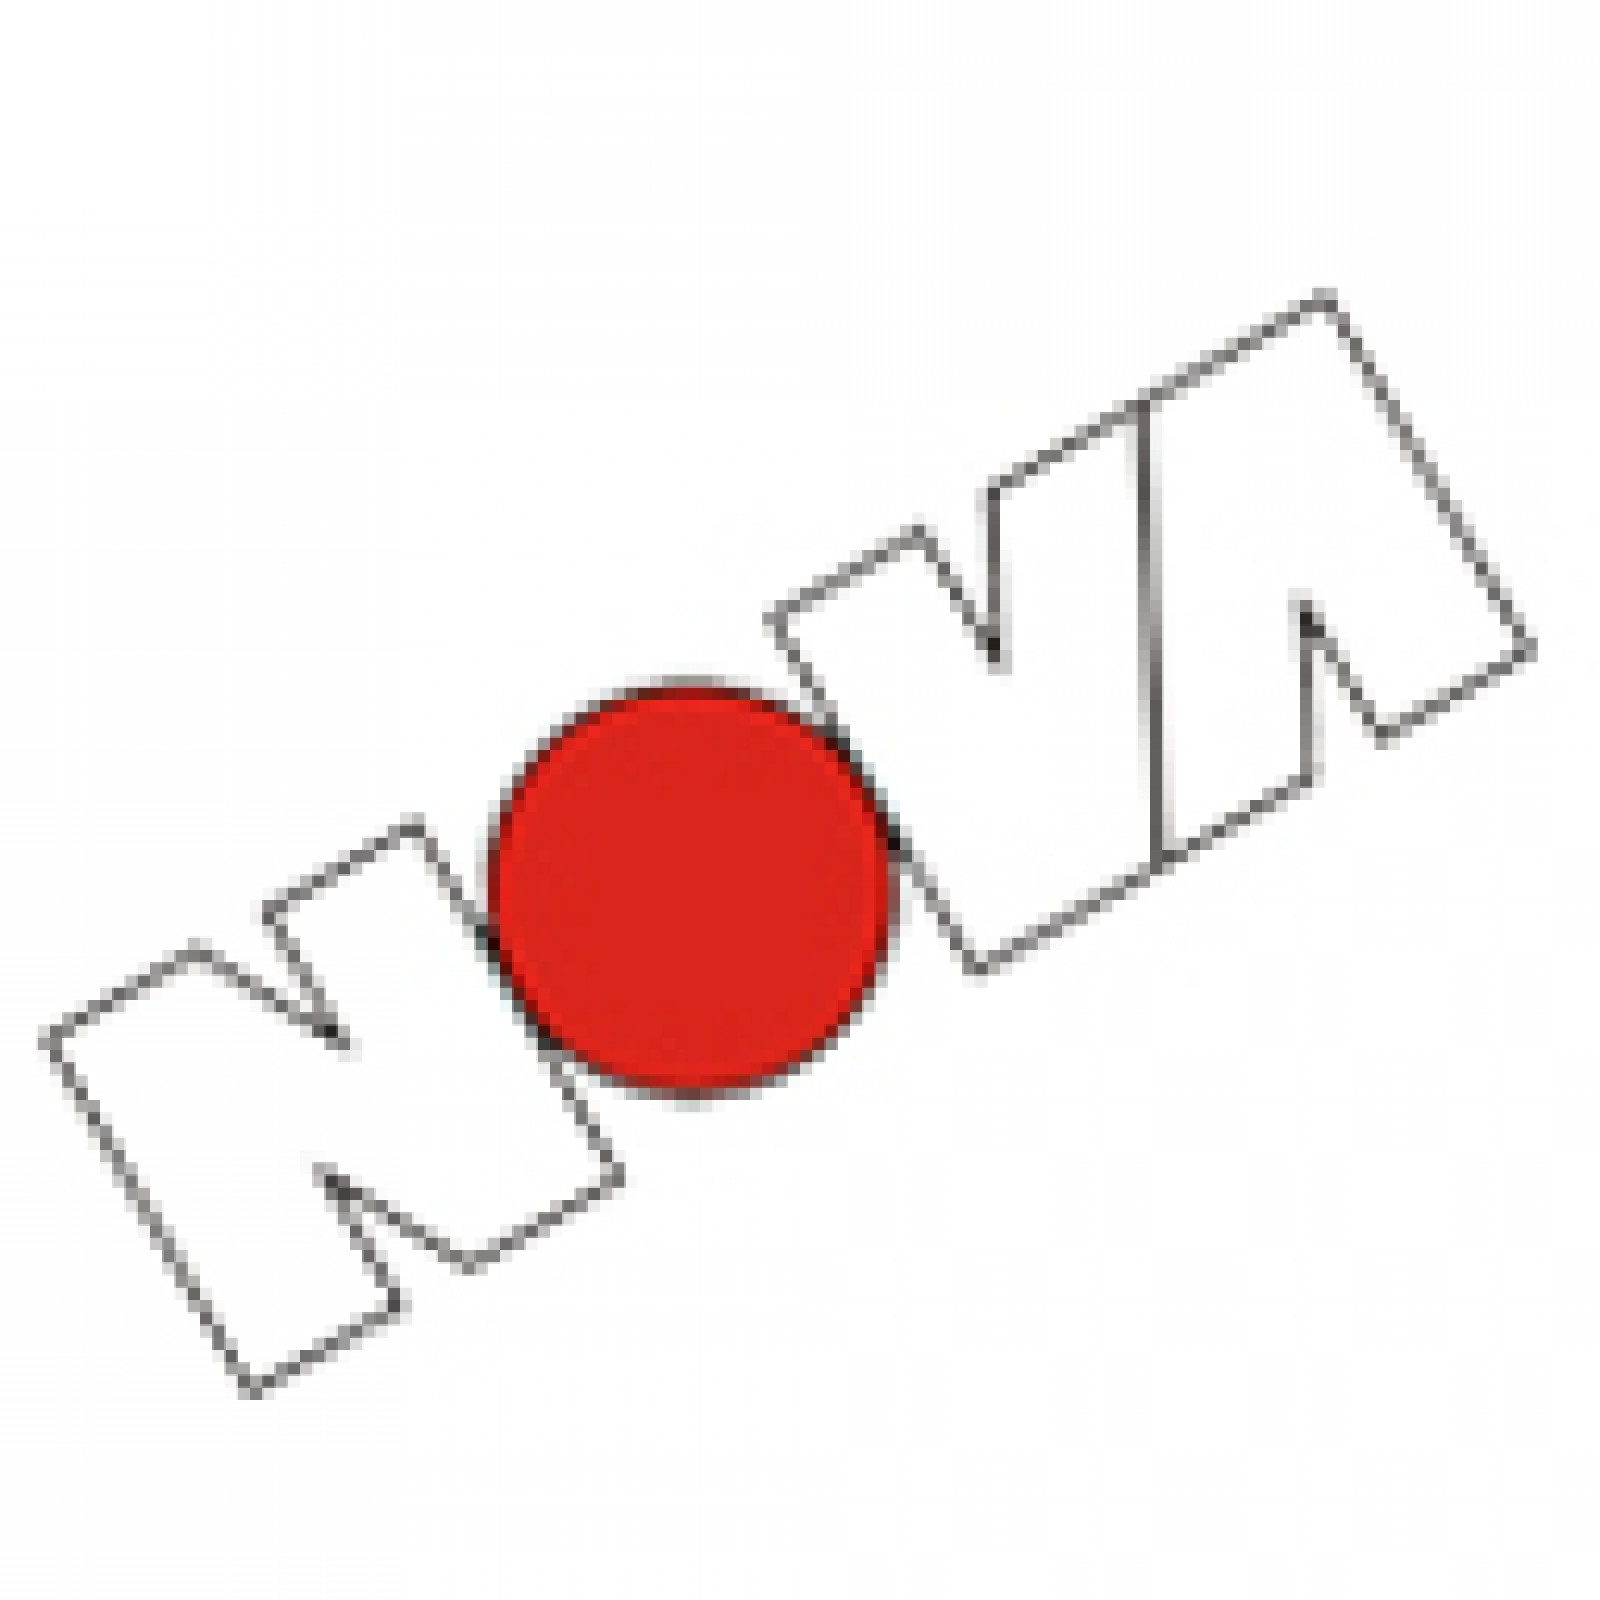 Nova make site surveys easier